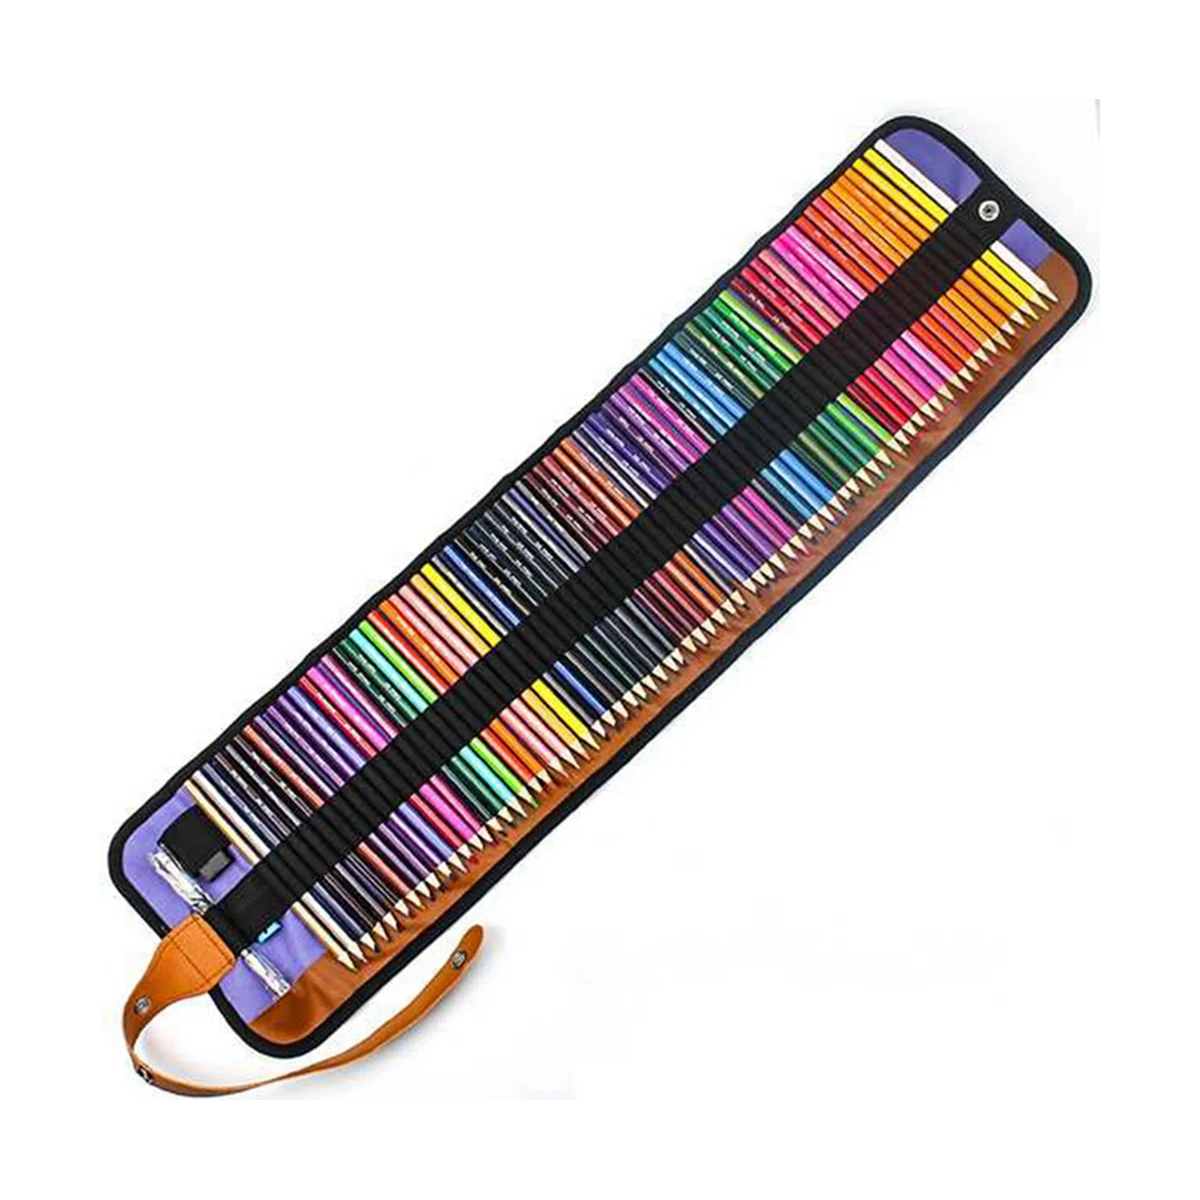 Renkli kurşun kalem stor perde seti Renk Kurşun 72 Renk renkli kurşun kalem Seti Kauçuk Kalemtıraş Genişletici